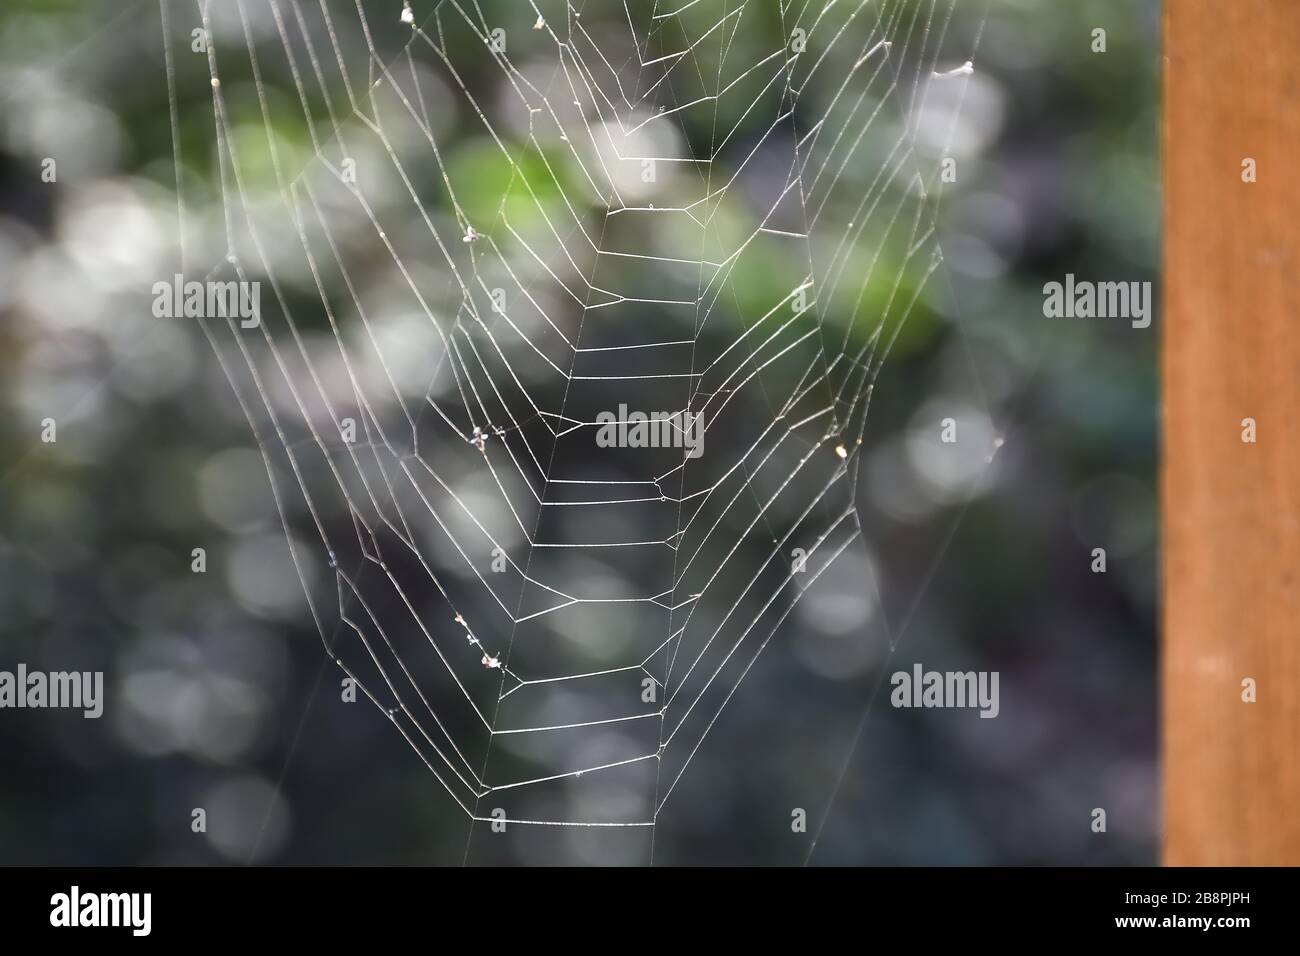 toile de araignée avec gouttes d'eau en arrière-plan Banque D'Images